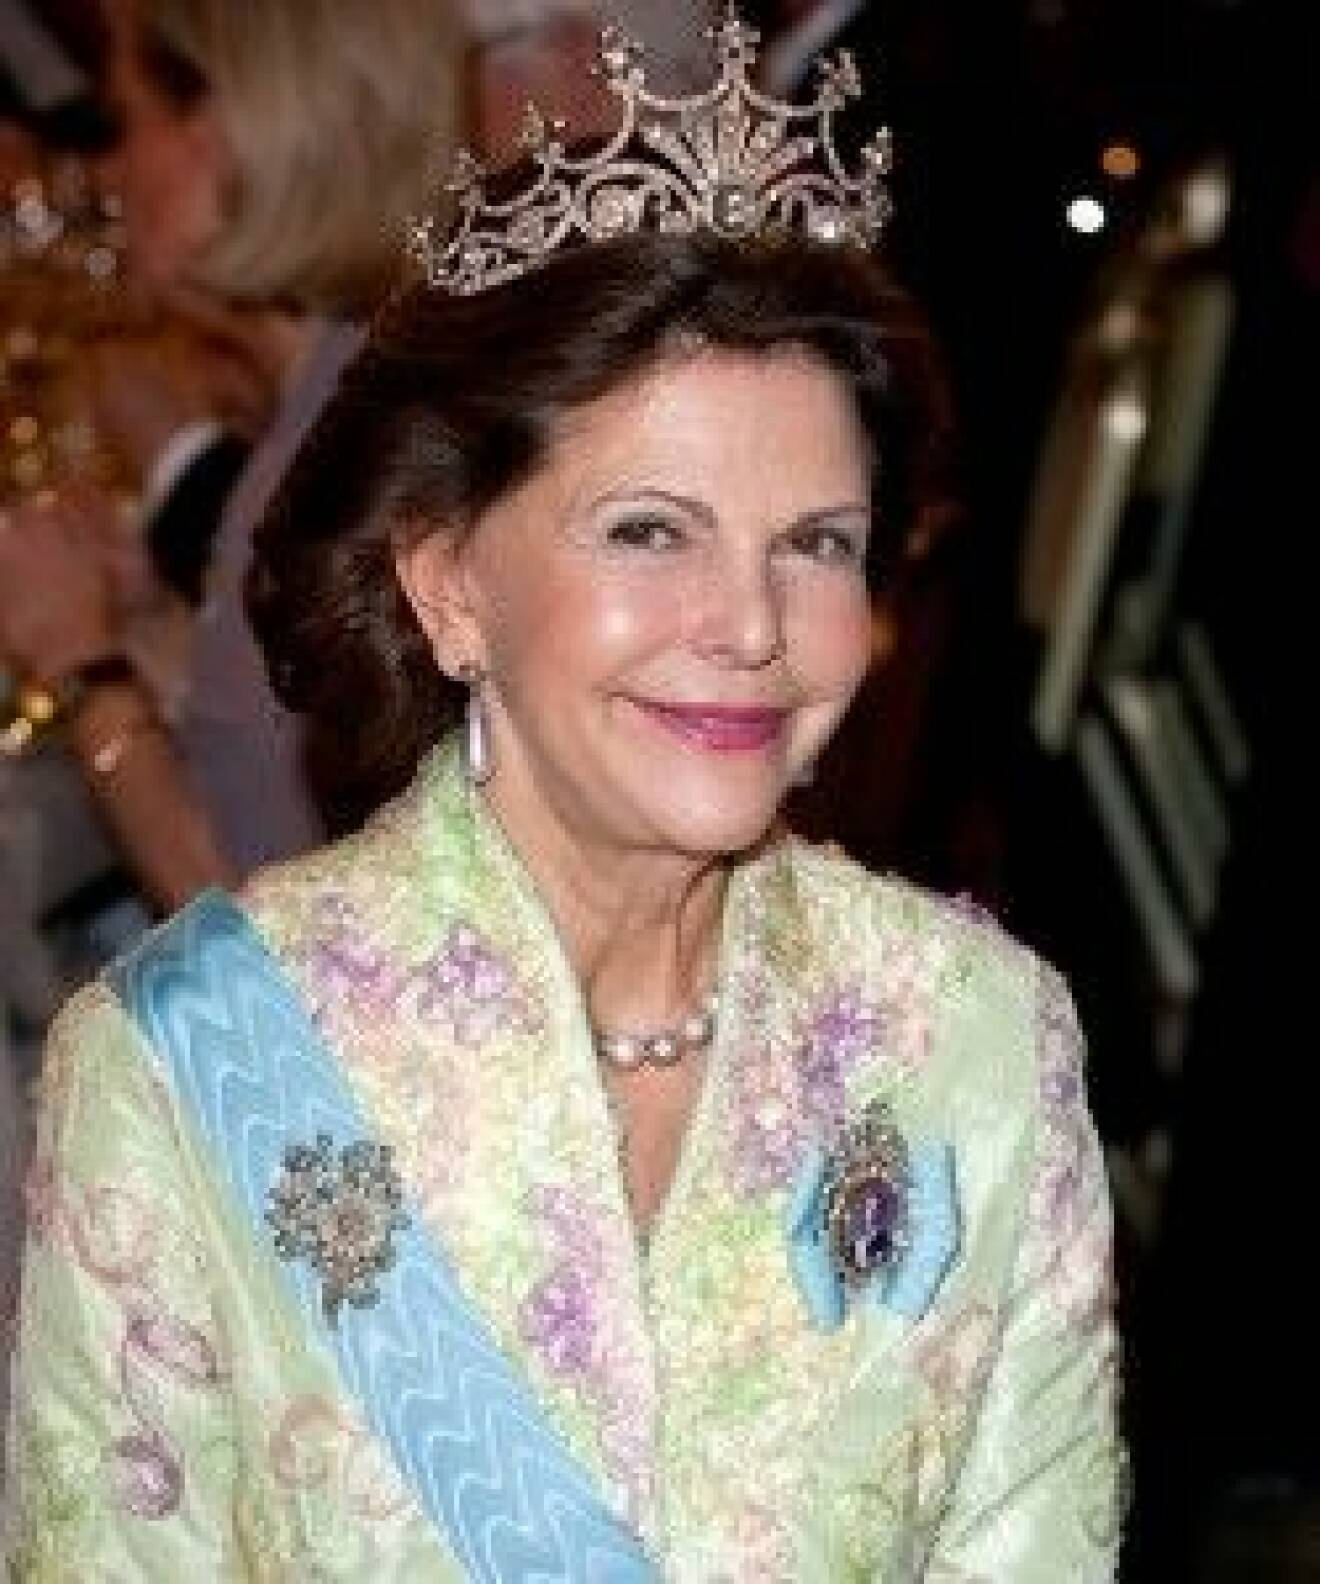 Drottning Silvia ler som oftast mot fotografernas blixtar.